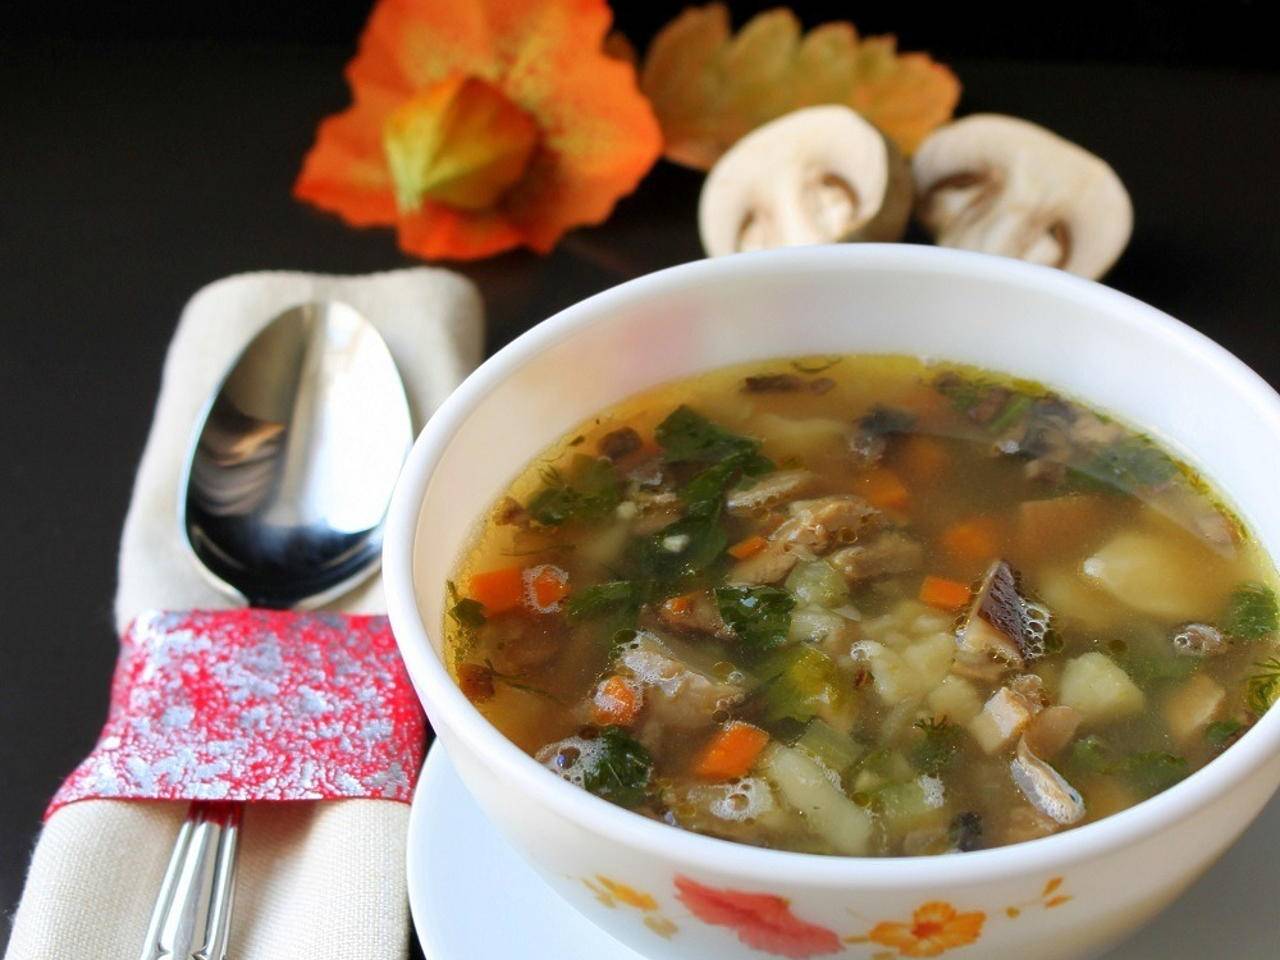 Какие супы можно есть при грудном вскармливании: гороховый, грибной, щавелевый